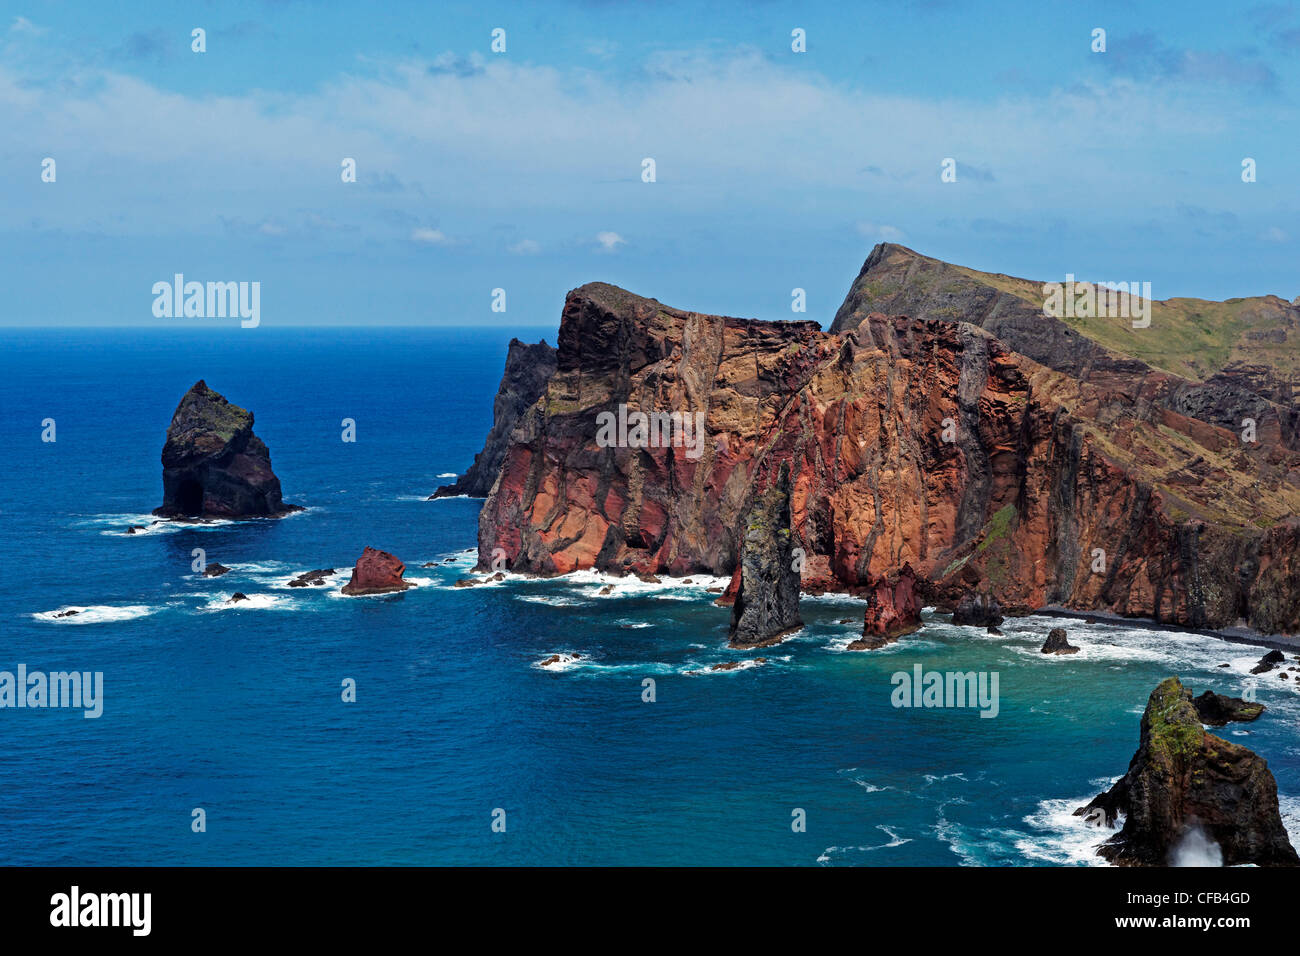 Europe, Portugal, Republica Portuguesa, Madeira, Porto do Canical, Ponta do Rosto, bay, cliffs, place of interest, tourism, wate Stock Photo